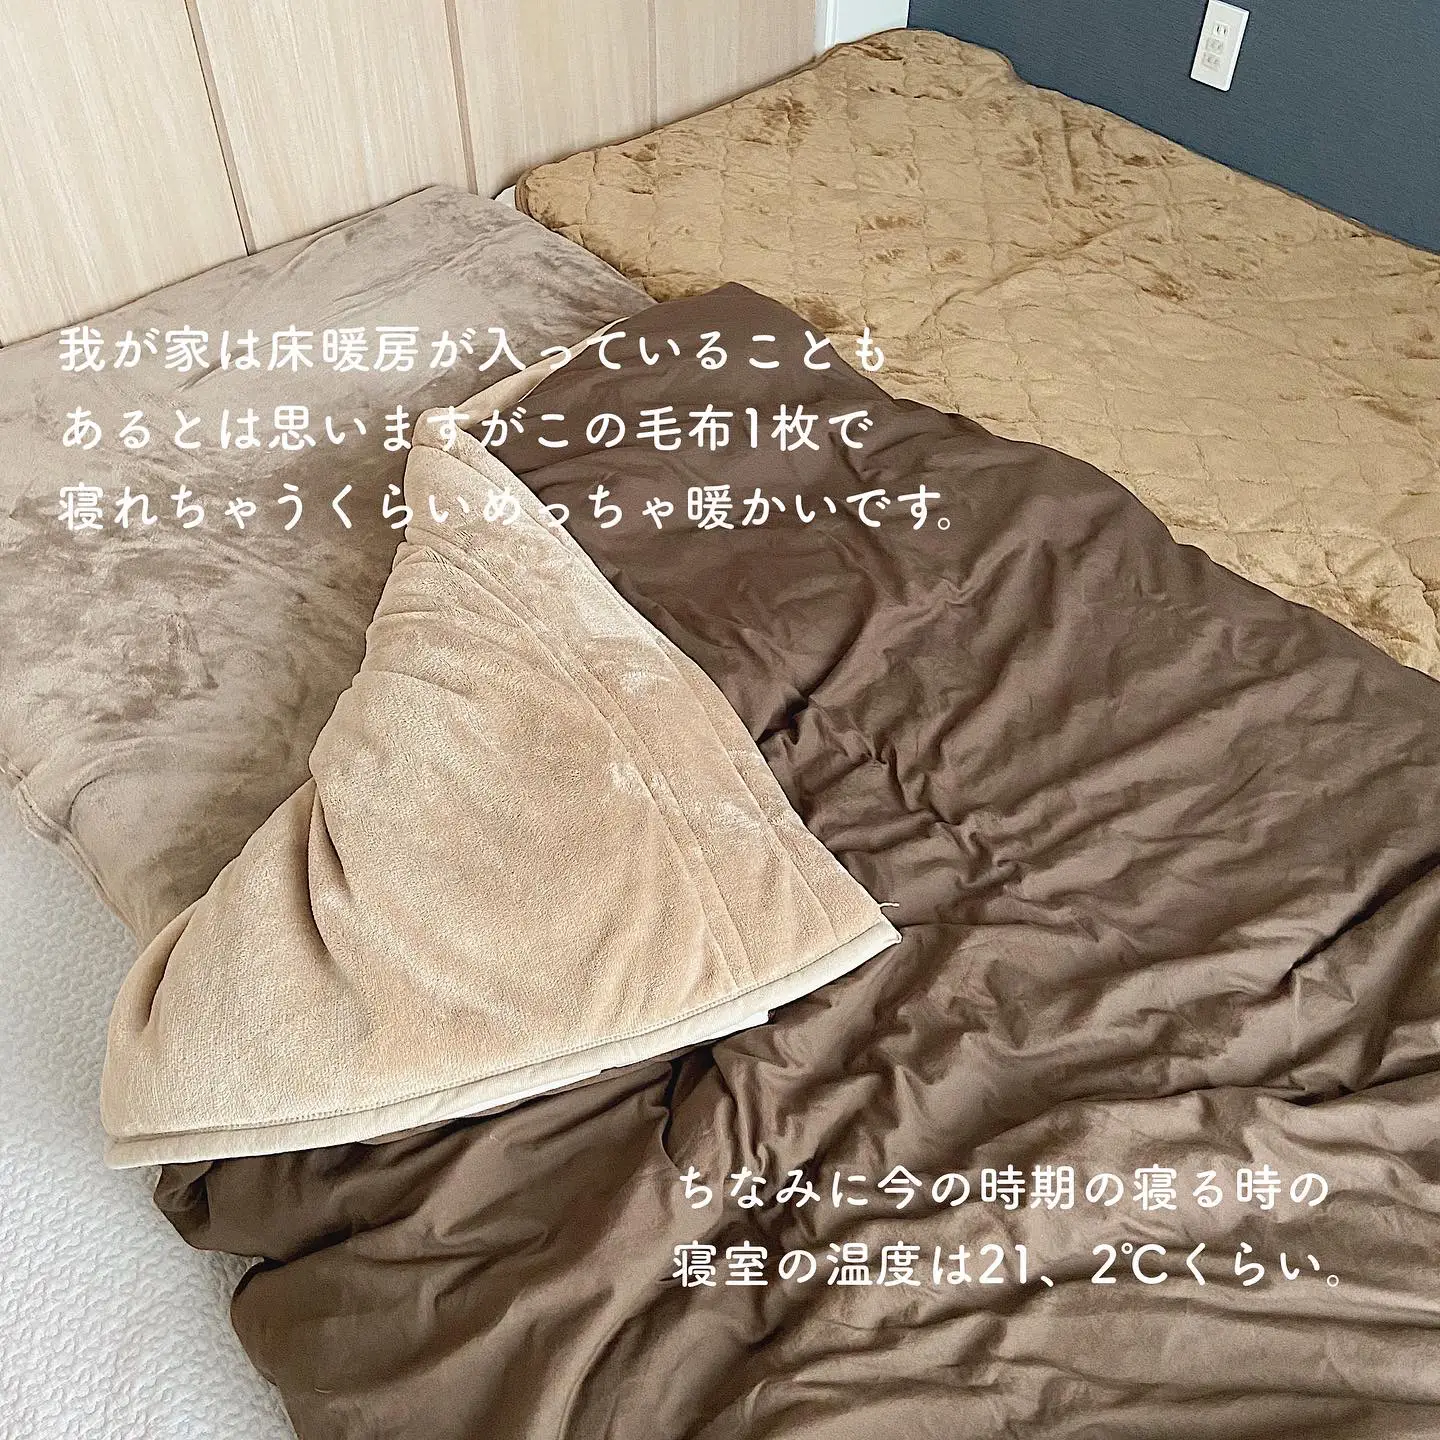 4層毛布あったかすぎる𓈒𓏸 | yuukii__ismartが投稿したフォトブック